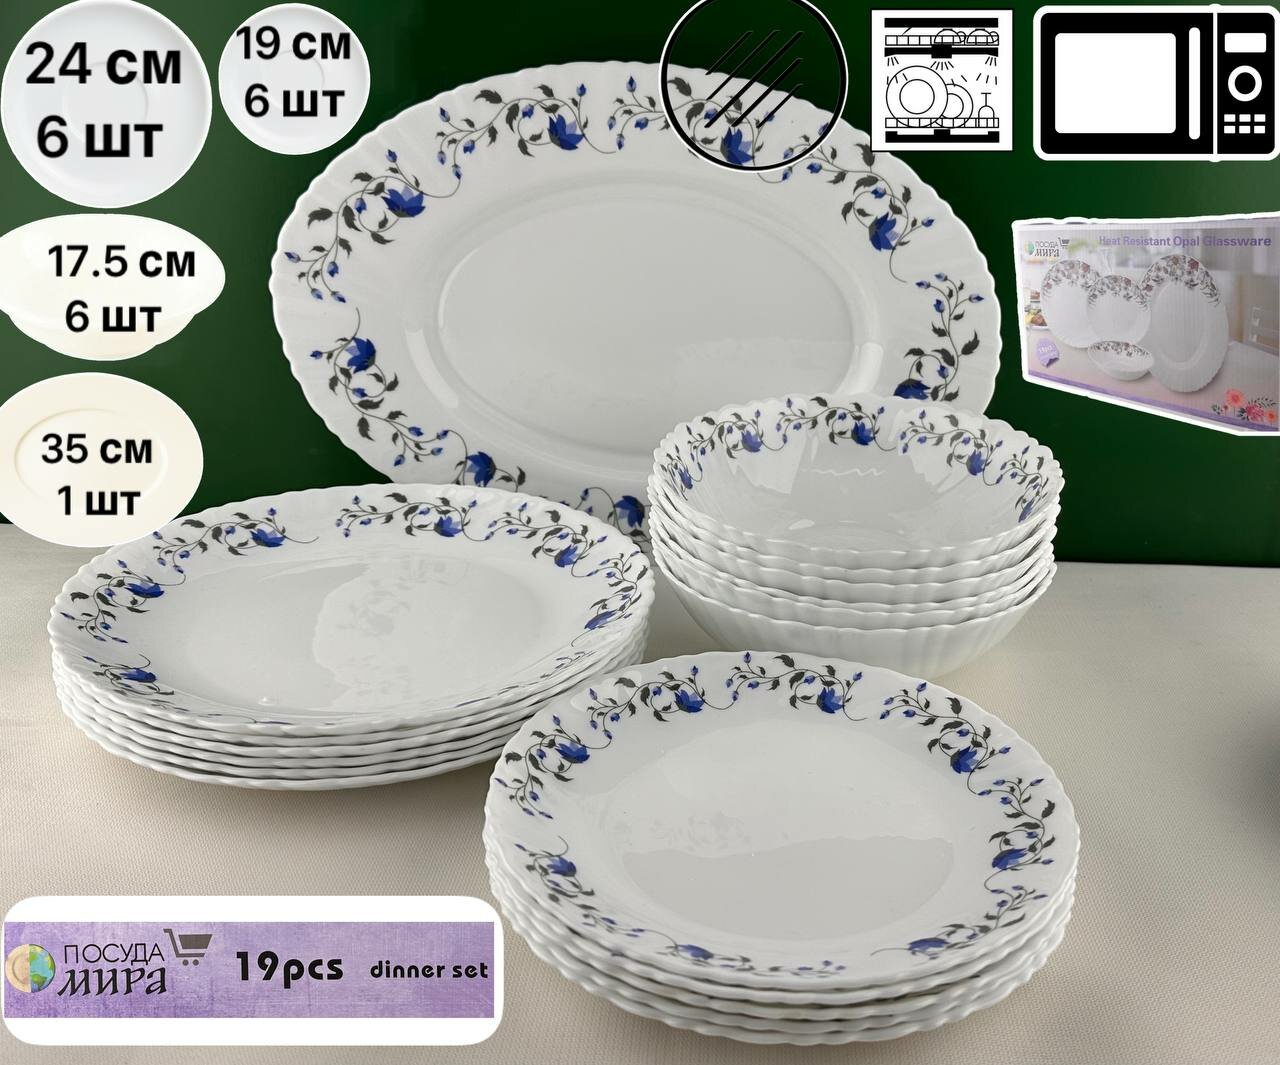 Набор столовой посуды "Посуда Мира" из 19 предметов,6 персон,6440